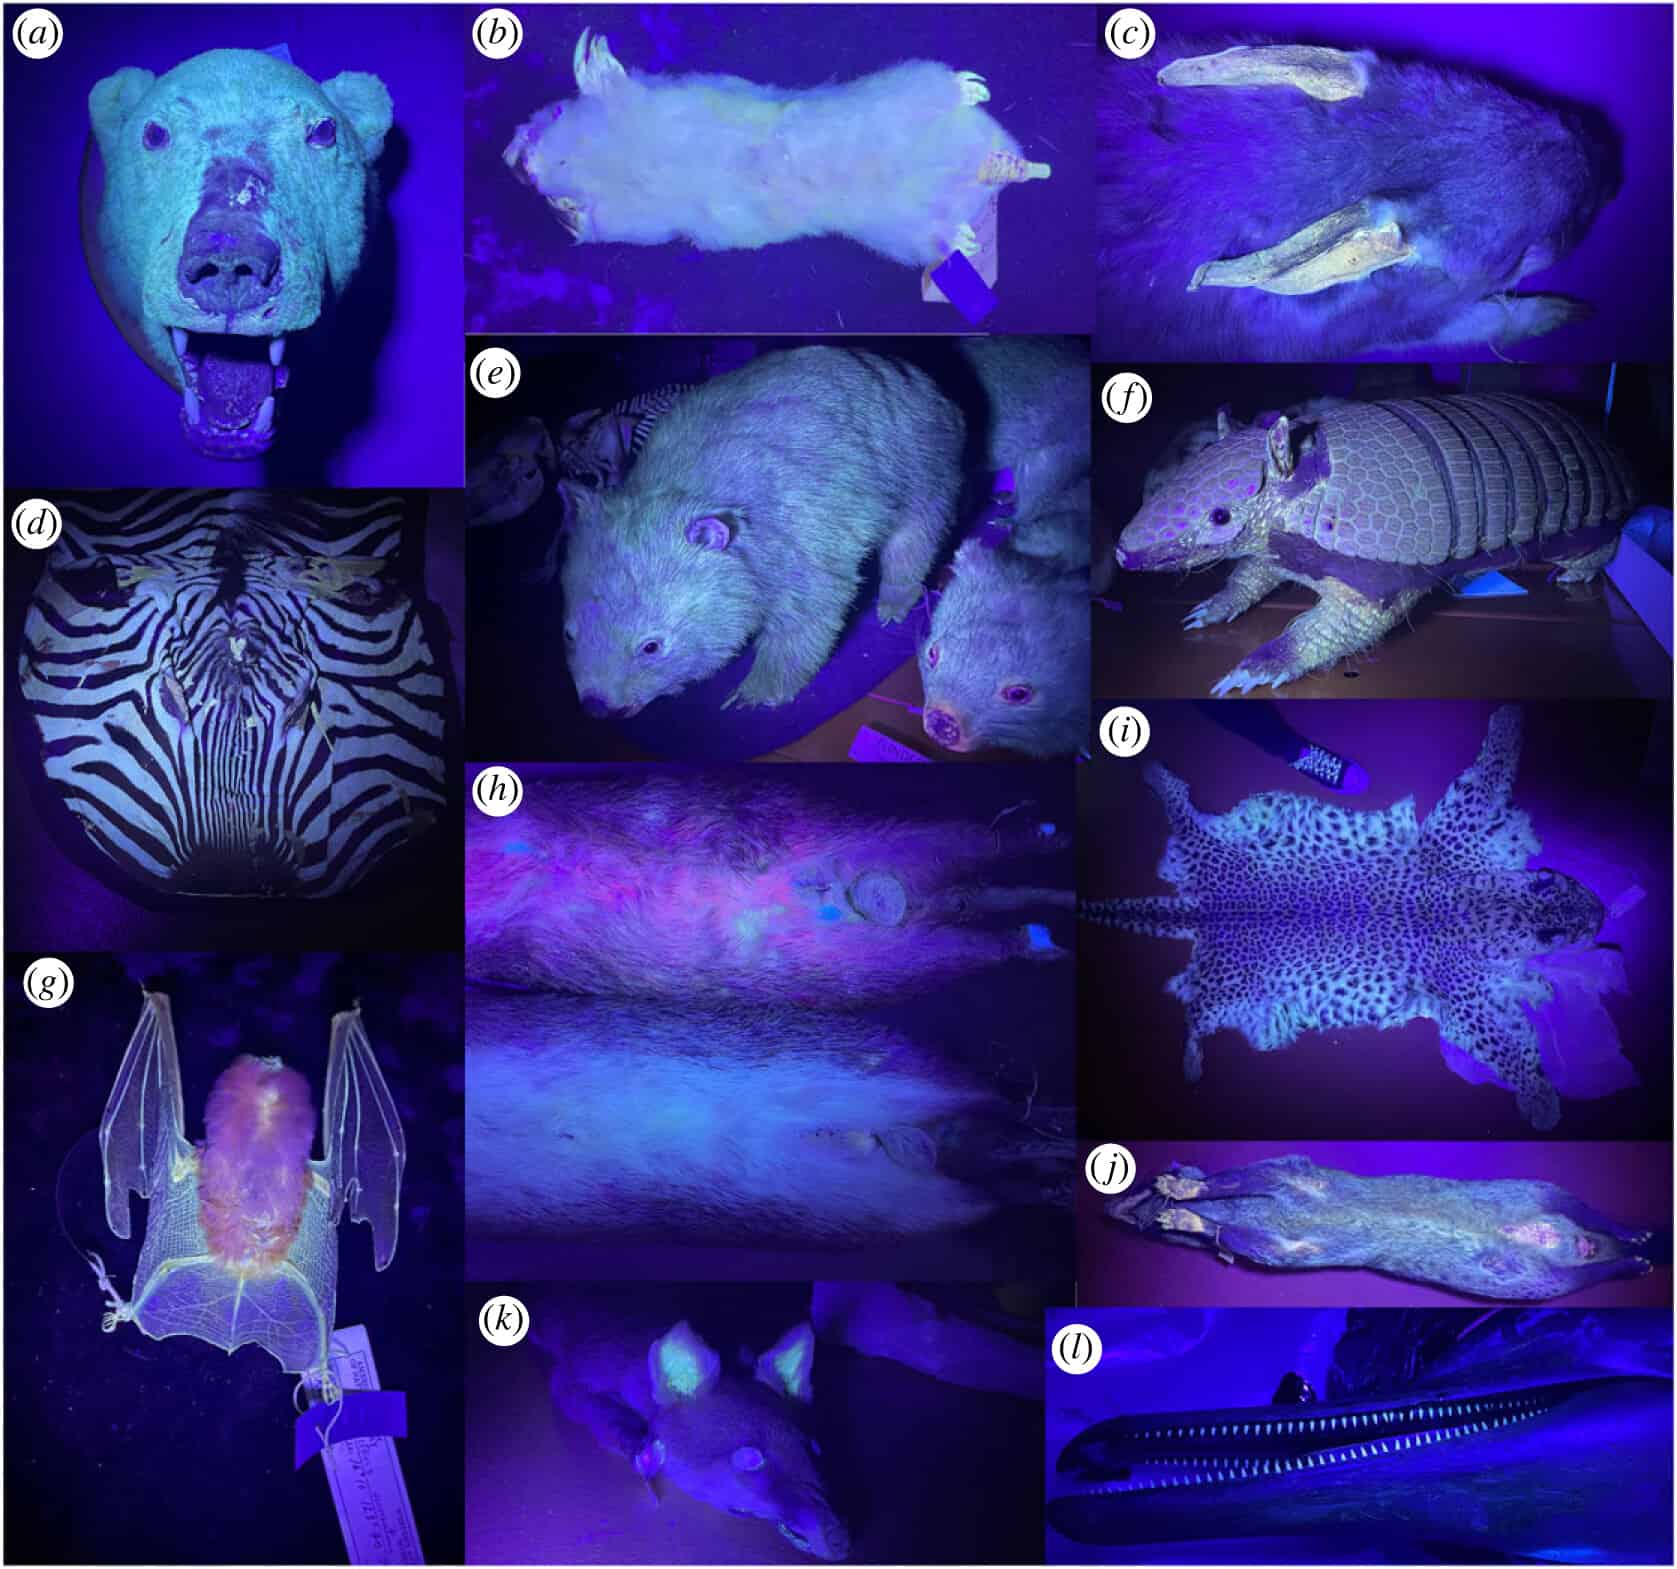 Mamíferos fluorescentes são mais comuns do que pensávamos – até os gatos fazem isso